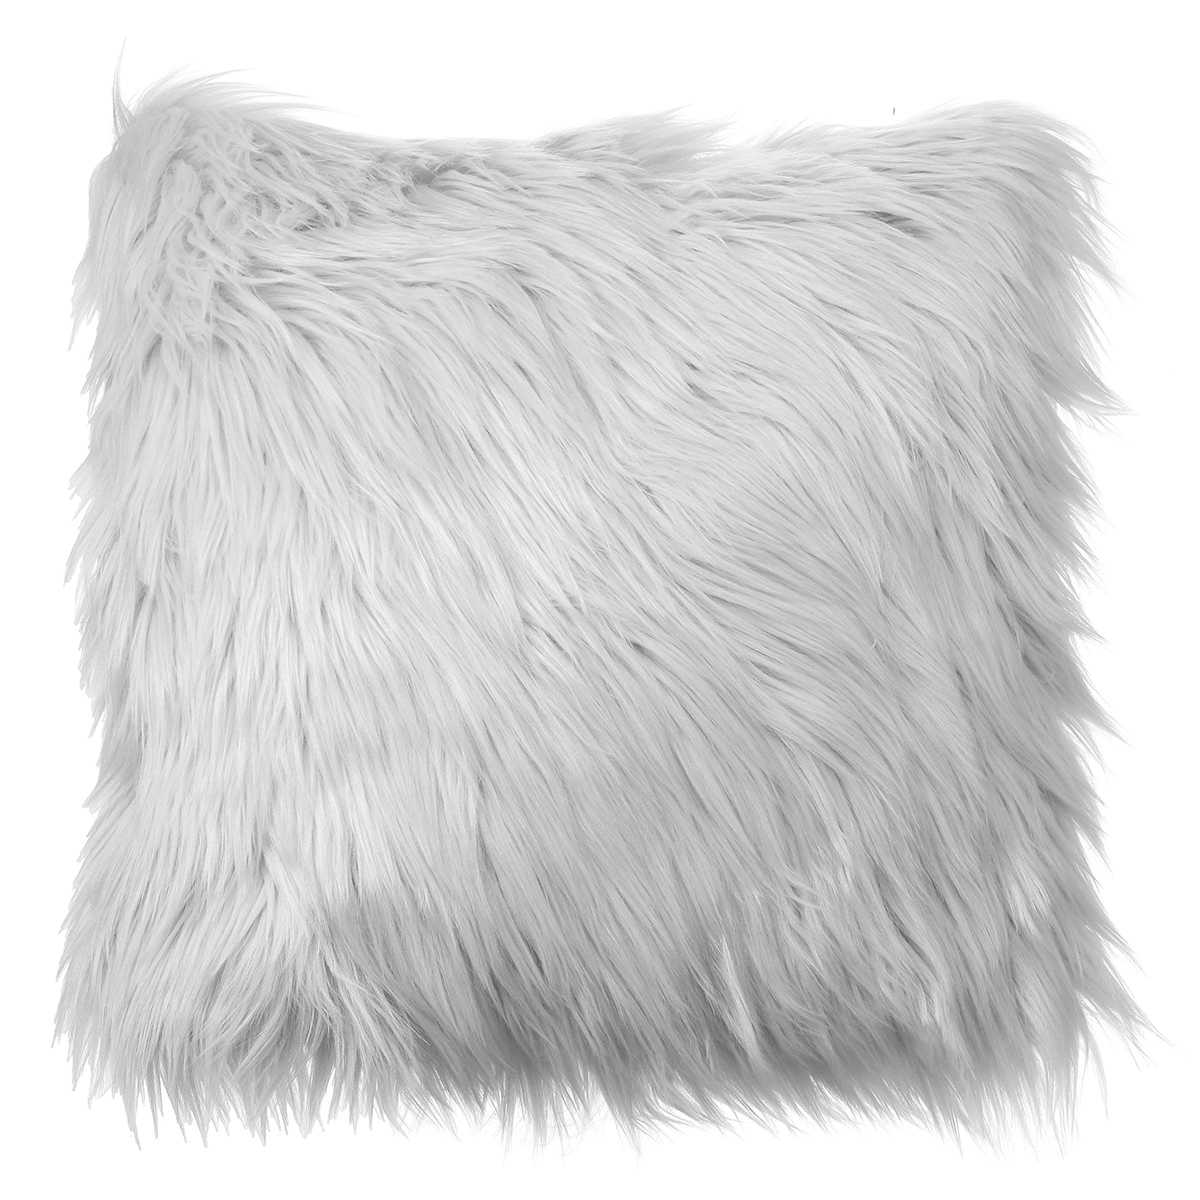 

40x40 Faux Wool Fur Cushion Cover Fluffy Soft Plush Throw Pillow Case Home Decor